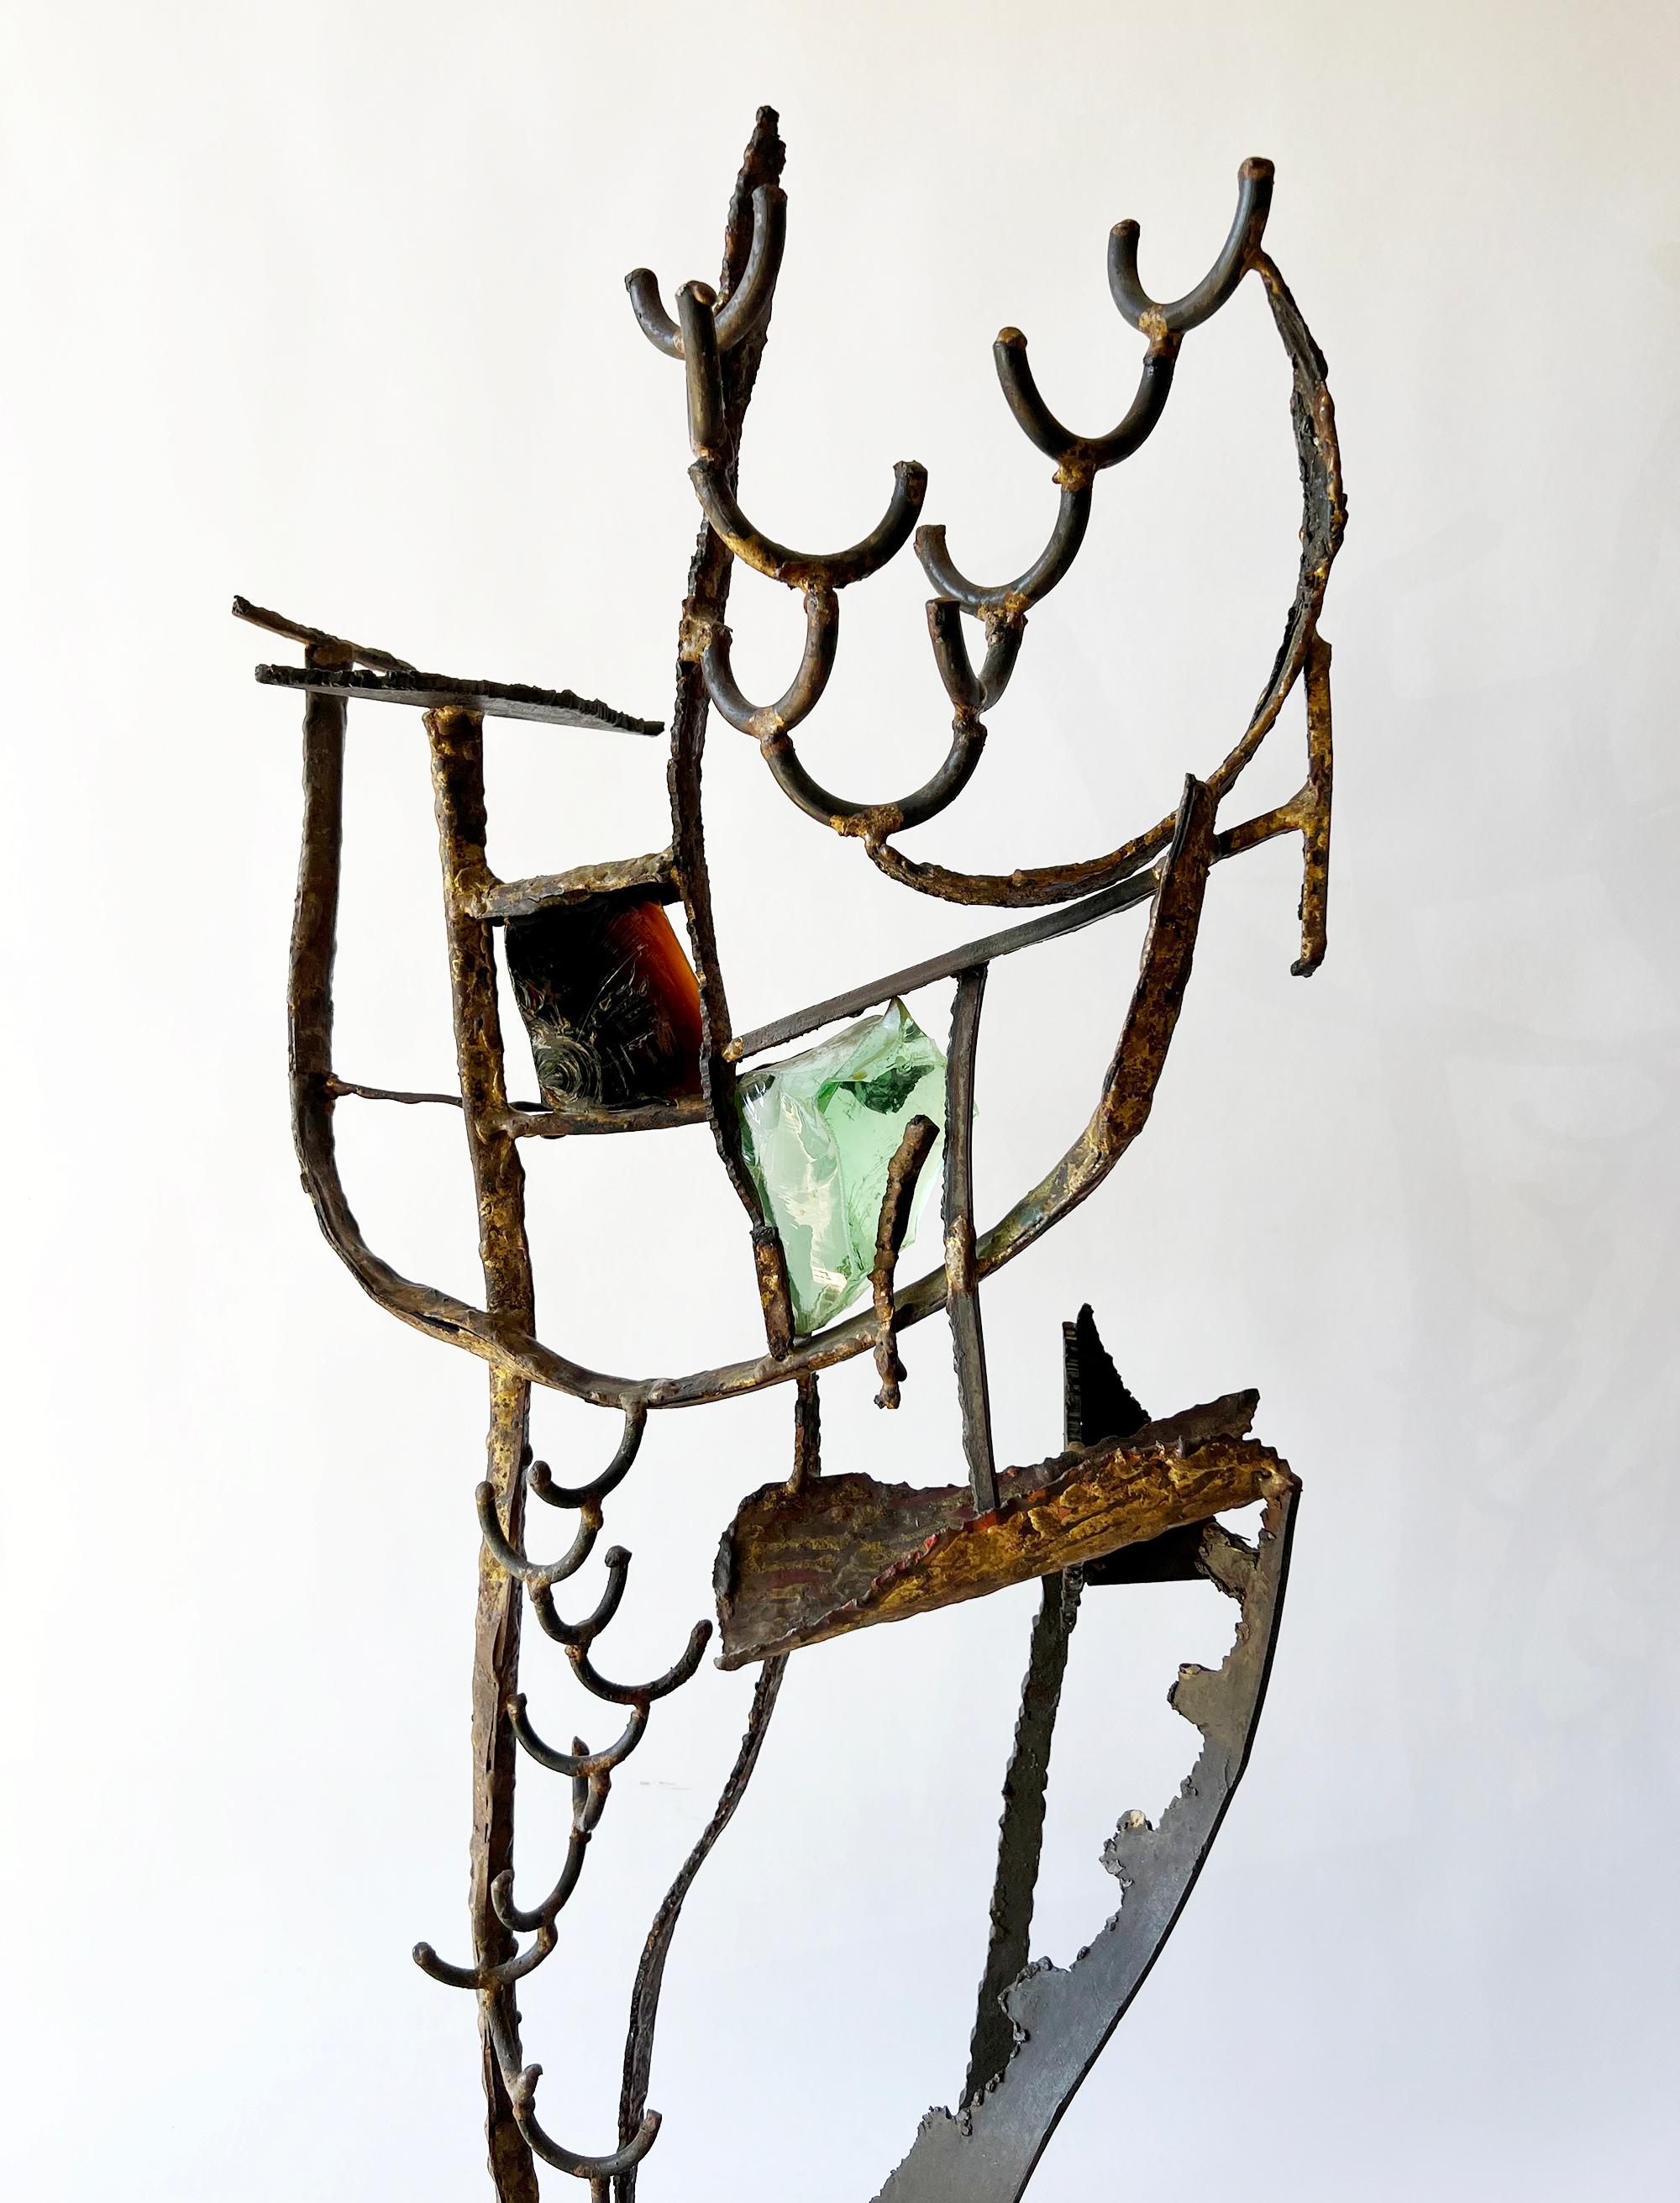 Handgefertigte Skulptur aus Eisen und Glas mit Bronzelötung, geschaffen von Leon Saulter aus Los Angeles, um 1958.  Die Skulptur misst 32